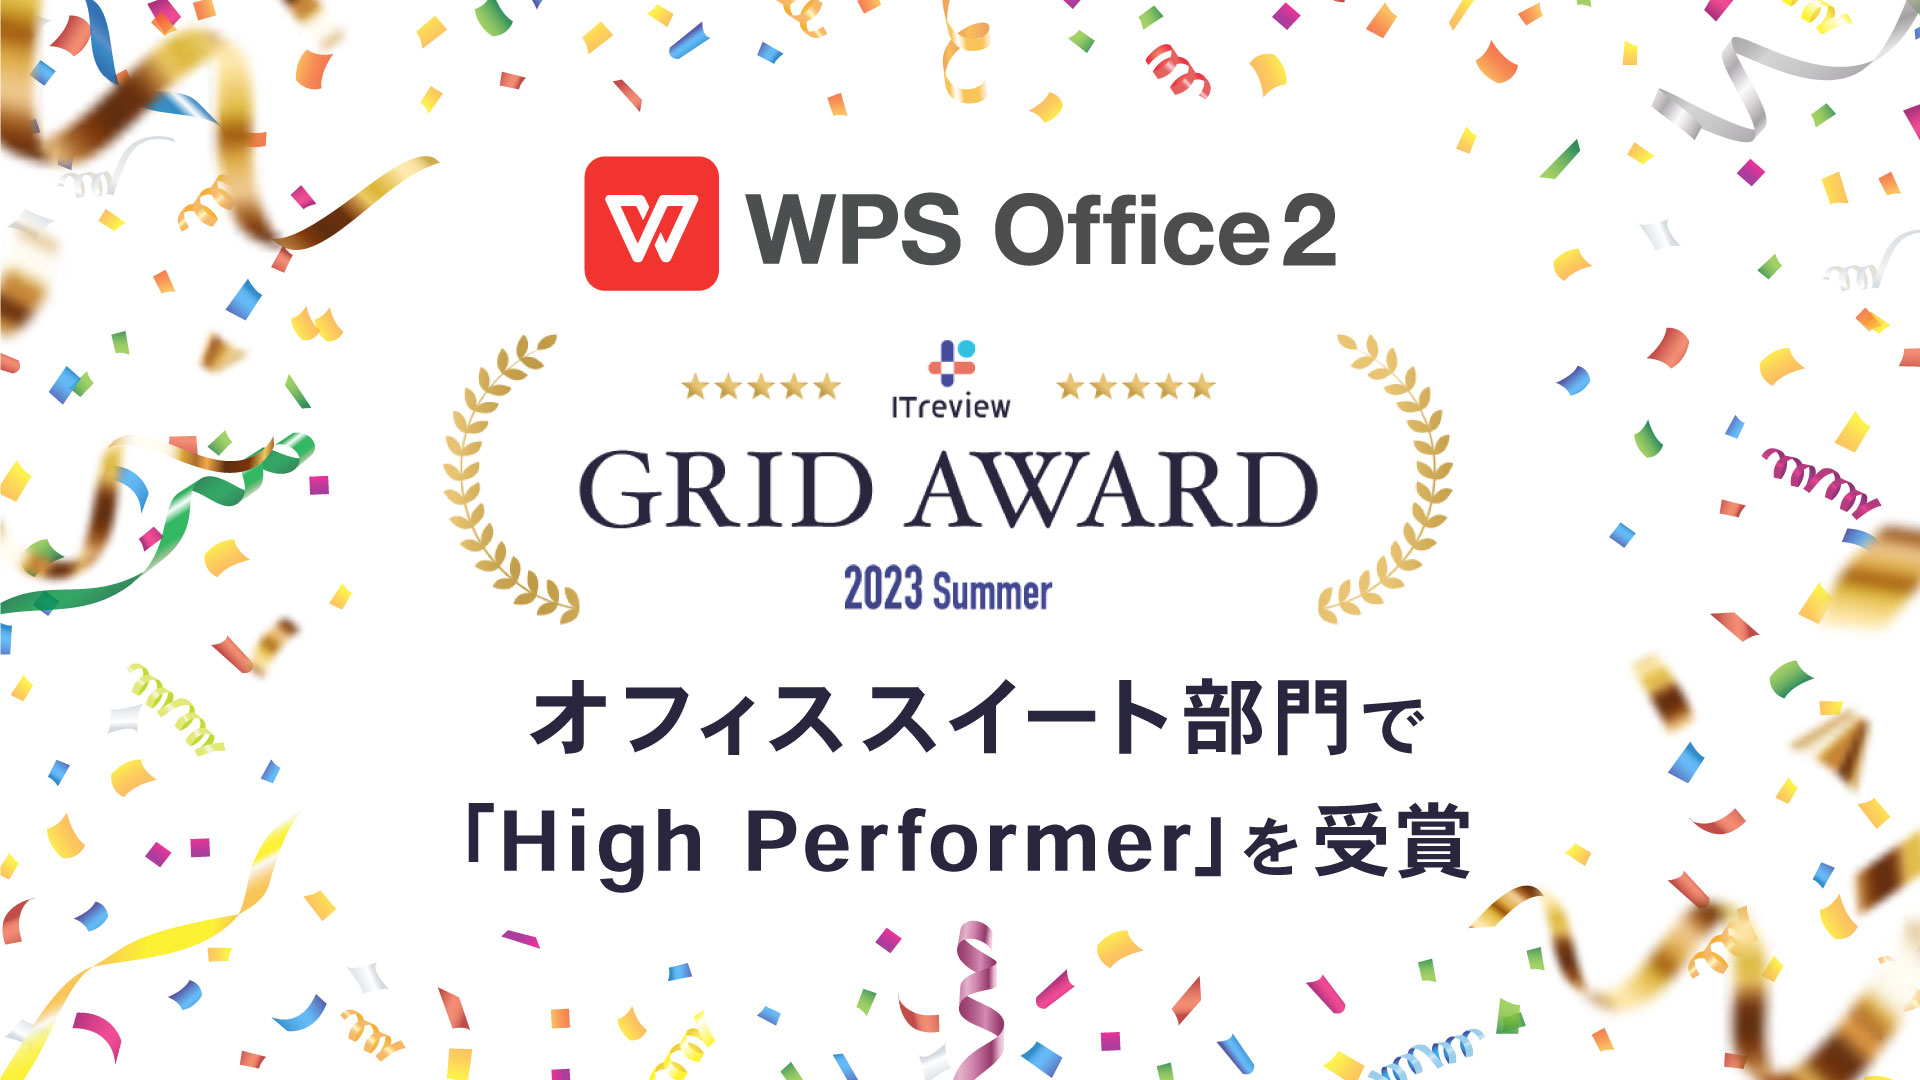 オフィスソフト「WPS Office」、「ITreview Grid Award 2023 Summer」オフィススイート部門で「High Performer」を受賞